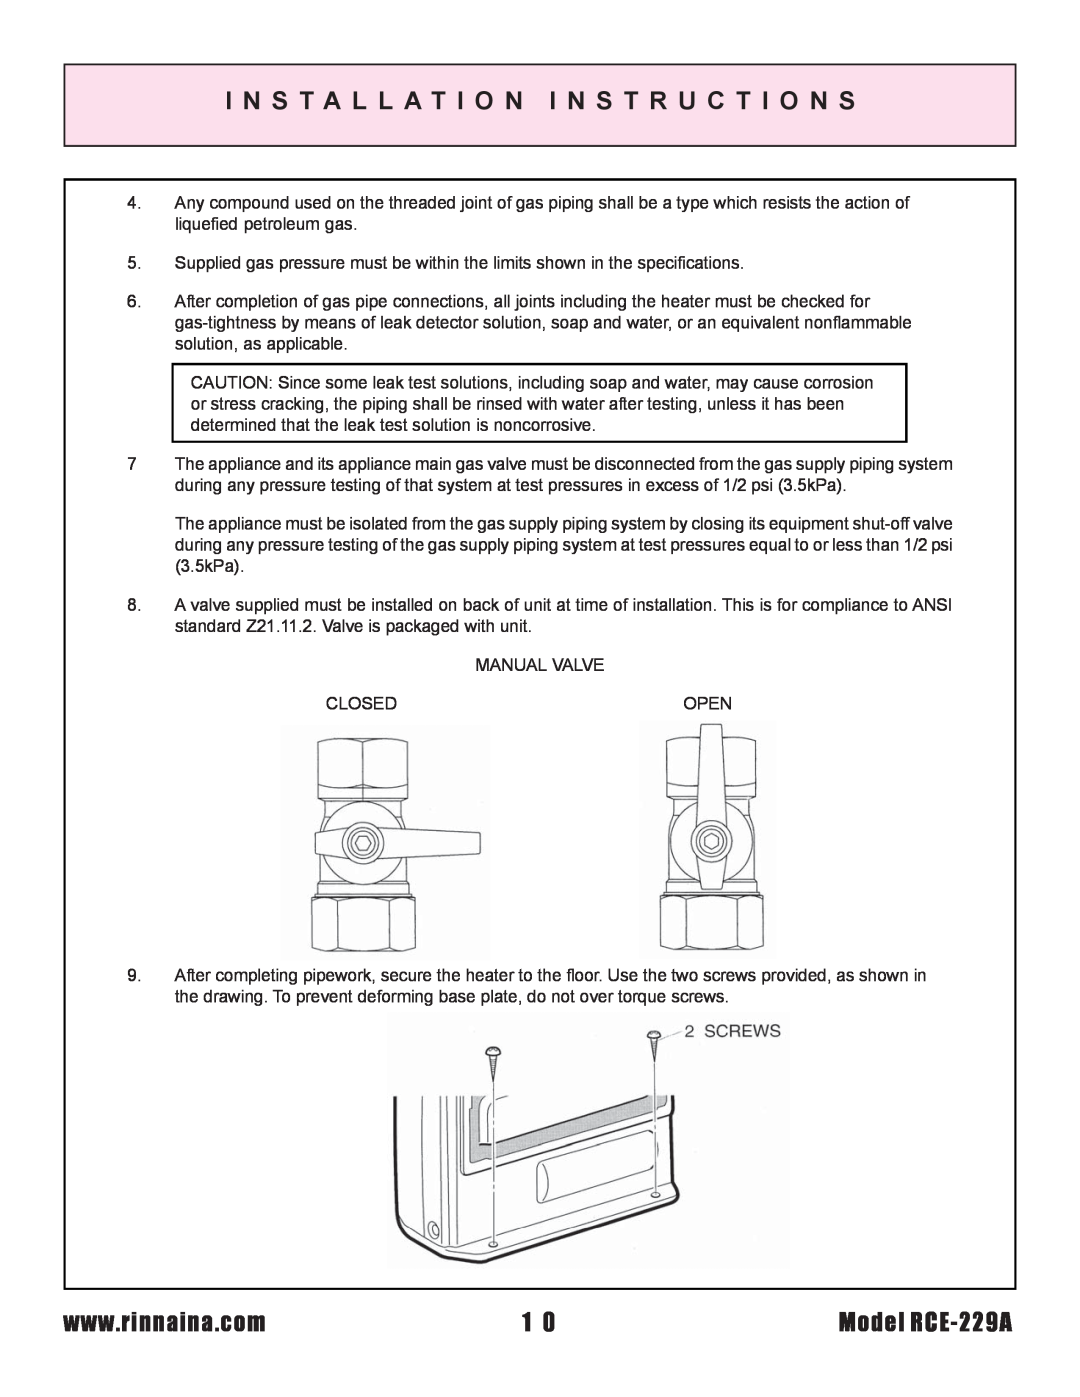 Rinnai installation instructions I N S T A L L A T I O N I N S T R U C T I O N S, Model RCE-229A 